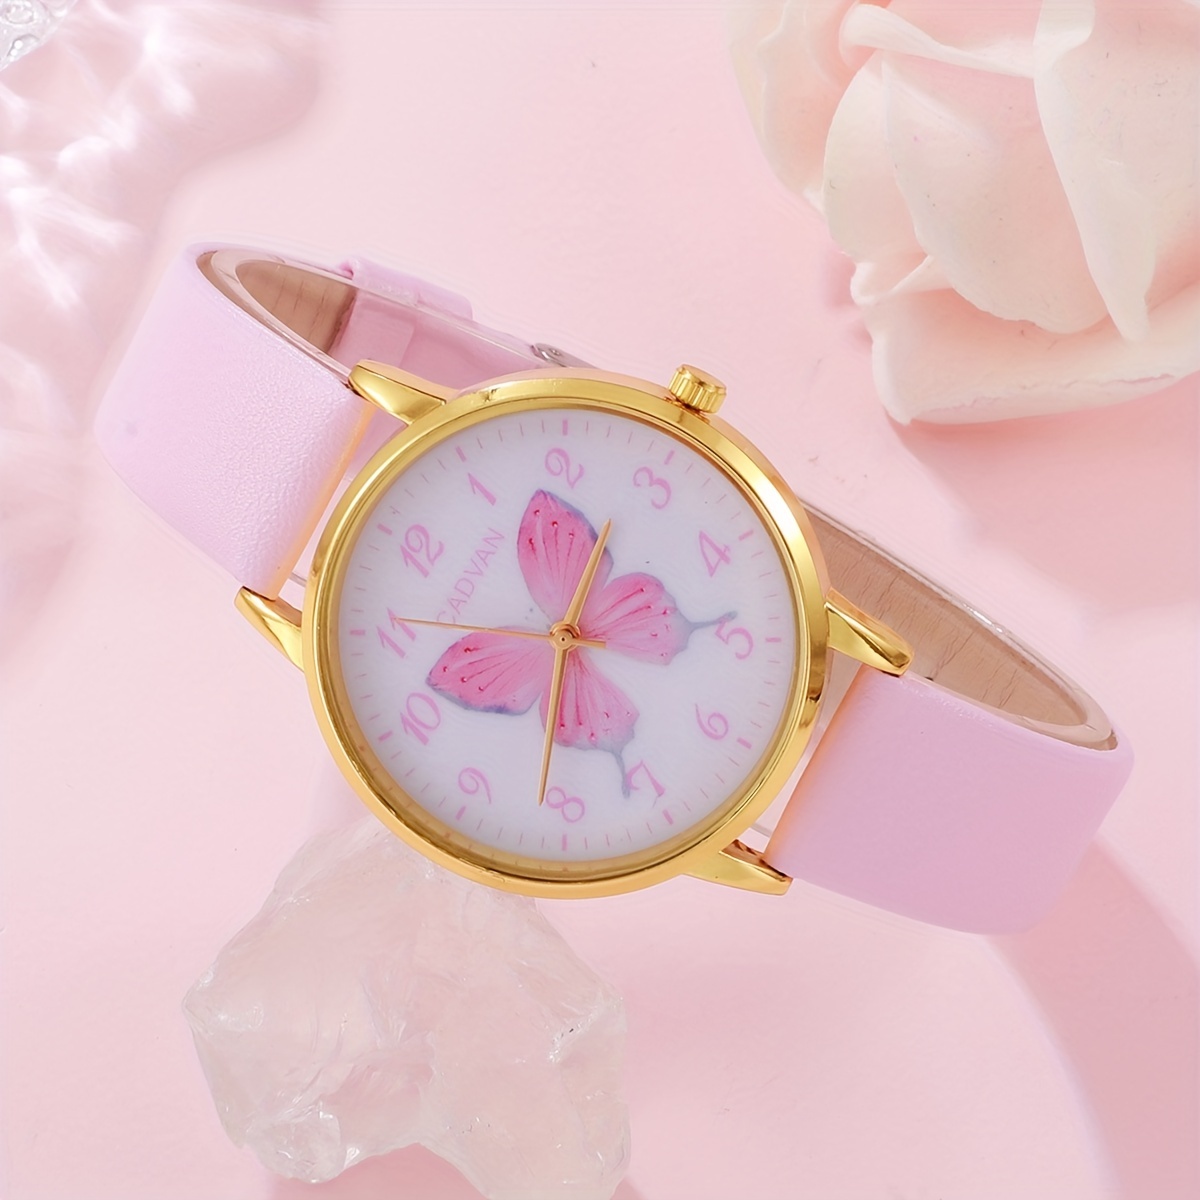 Reloj de niña analogo pink / rosado